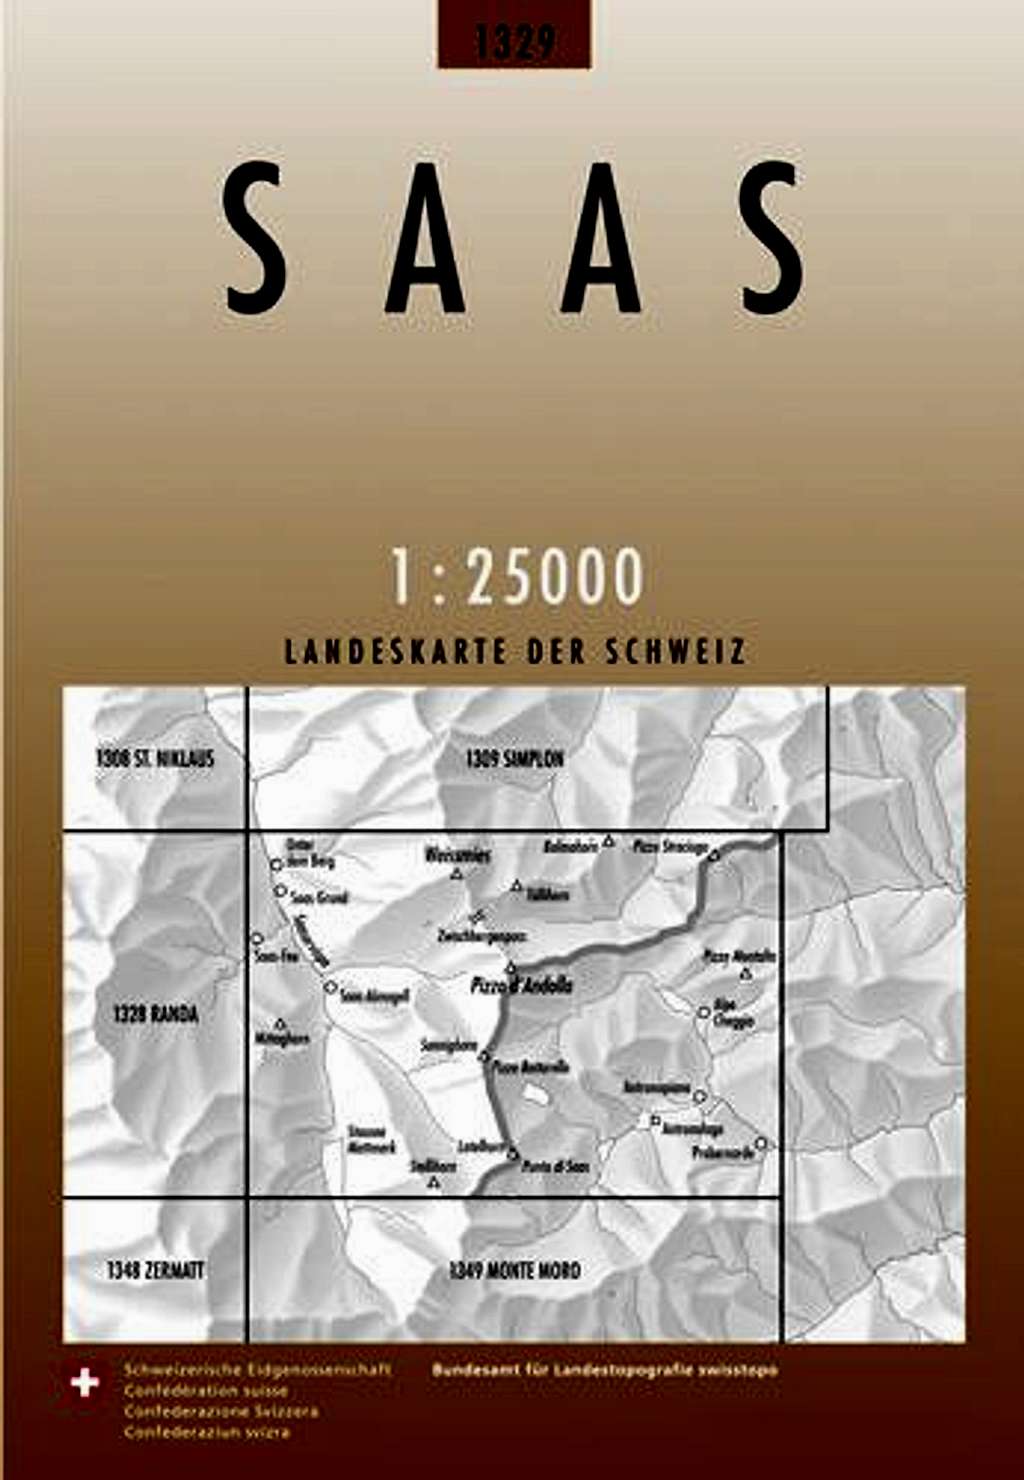 Schweizer Landeskarte 1329: Saas